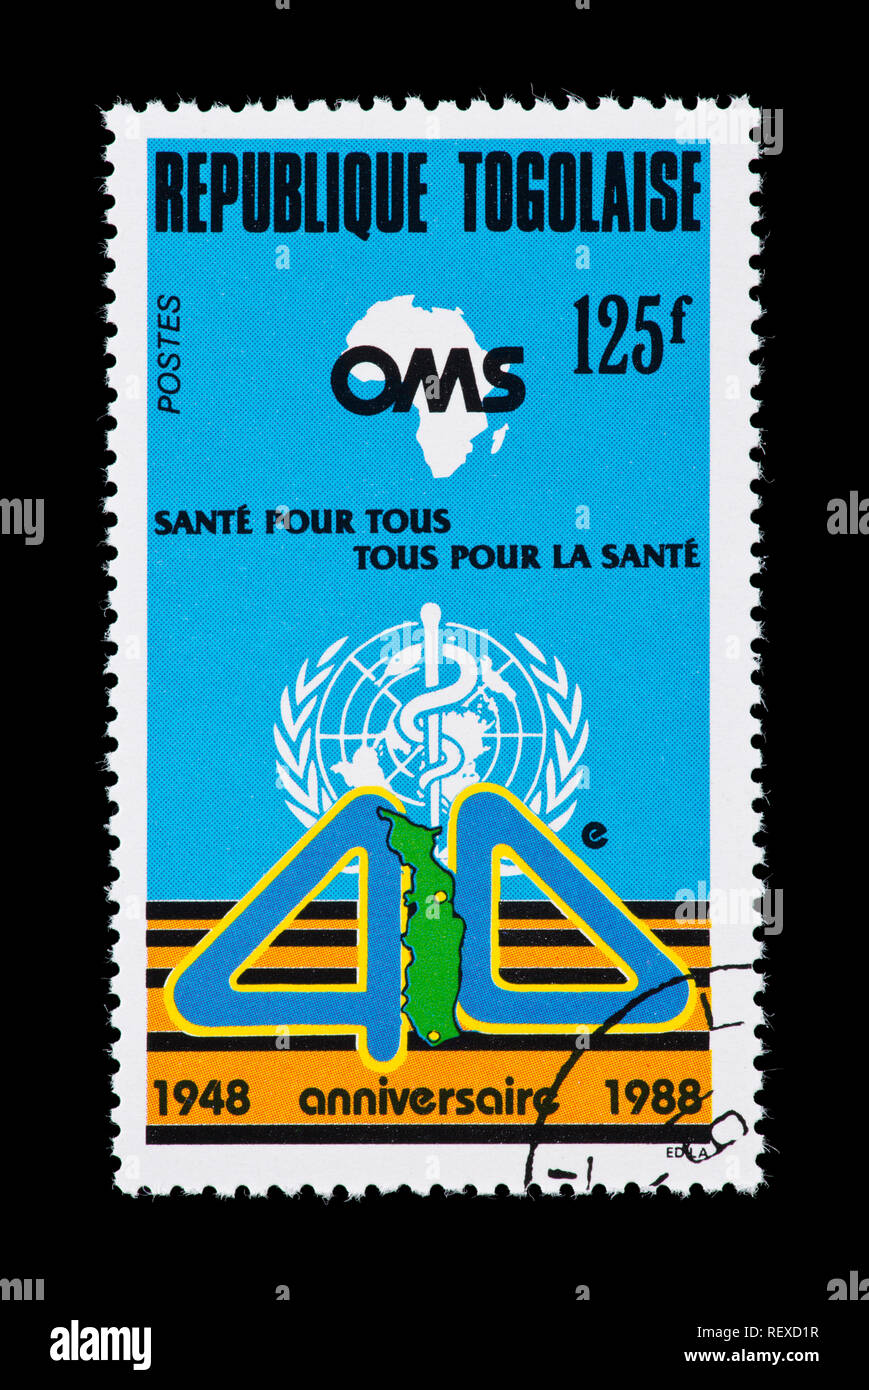 Timbre-poste du Togo représentant des emblèmes pour qui, 40e anniversaire. Banque D'Images